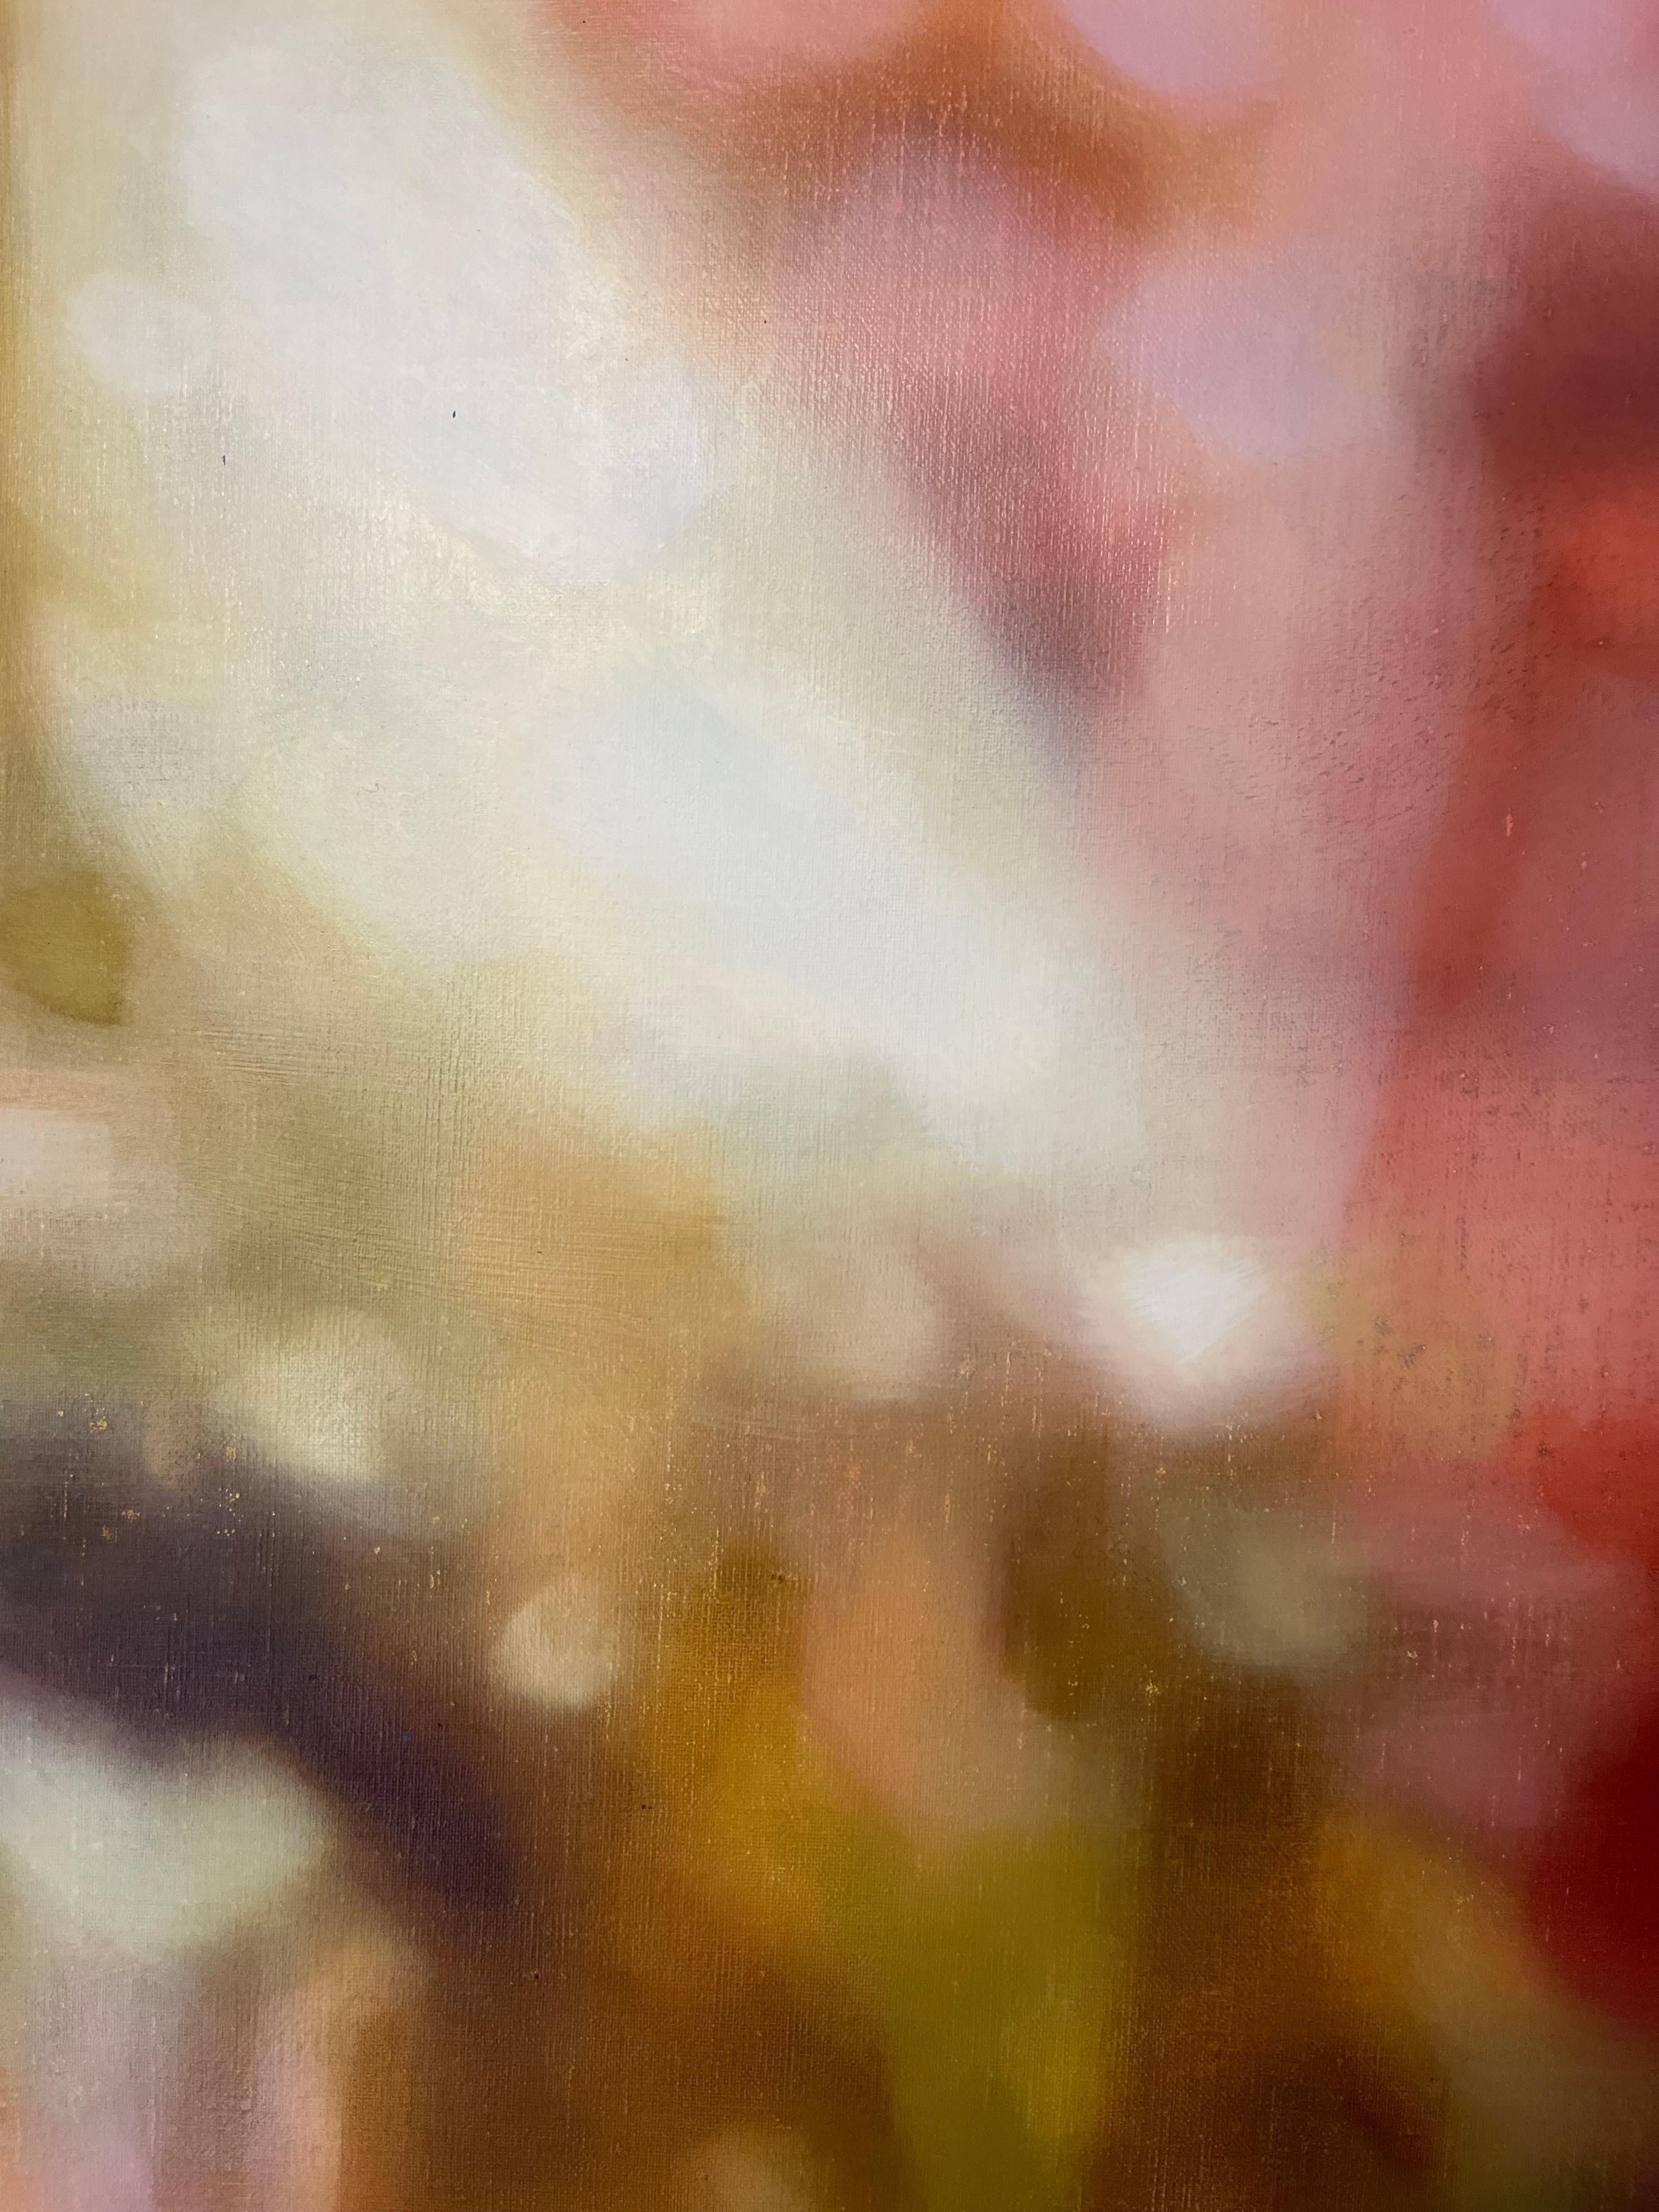 Späte Sonne
Beschreibung: Öl auf Leinen, rot, rosa, gestisch, modern, abstrakt

Dieses abstrakte Gemälde erzählt eine Geschichte über das Licht, das am späten Nachmittag durch das Fenster fällt. Die leuchtende Verwendung von Farbe und Licht erzeugt